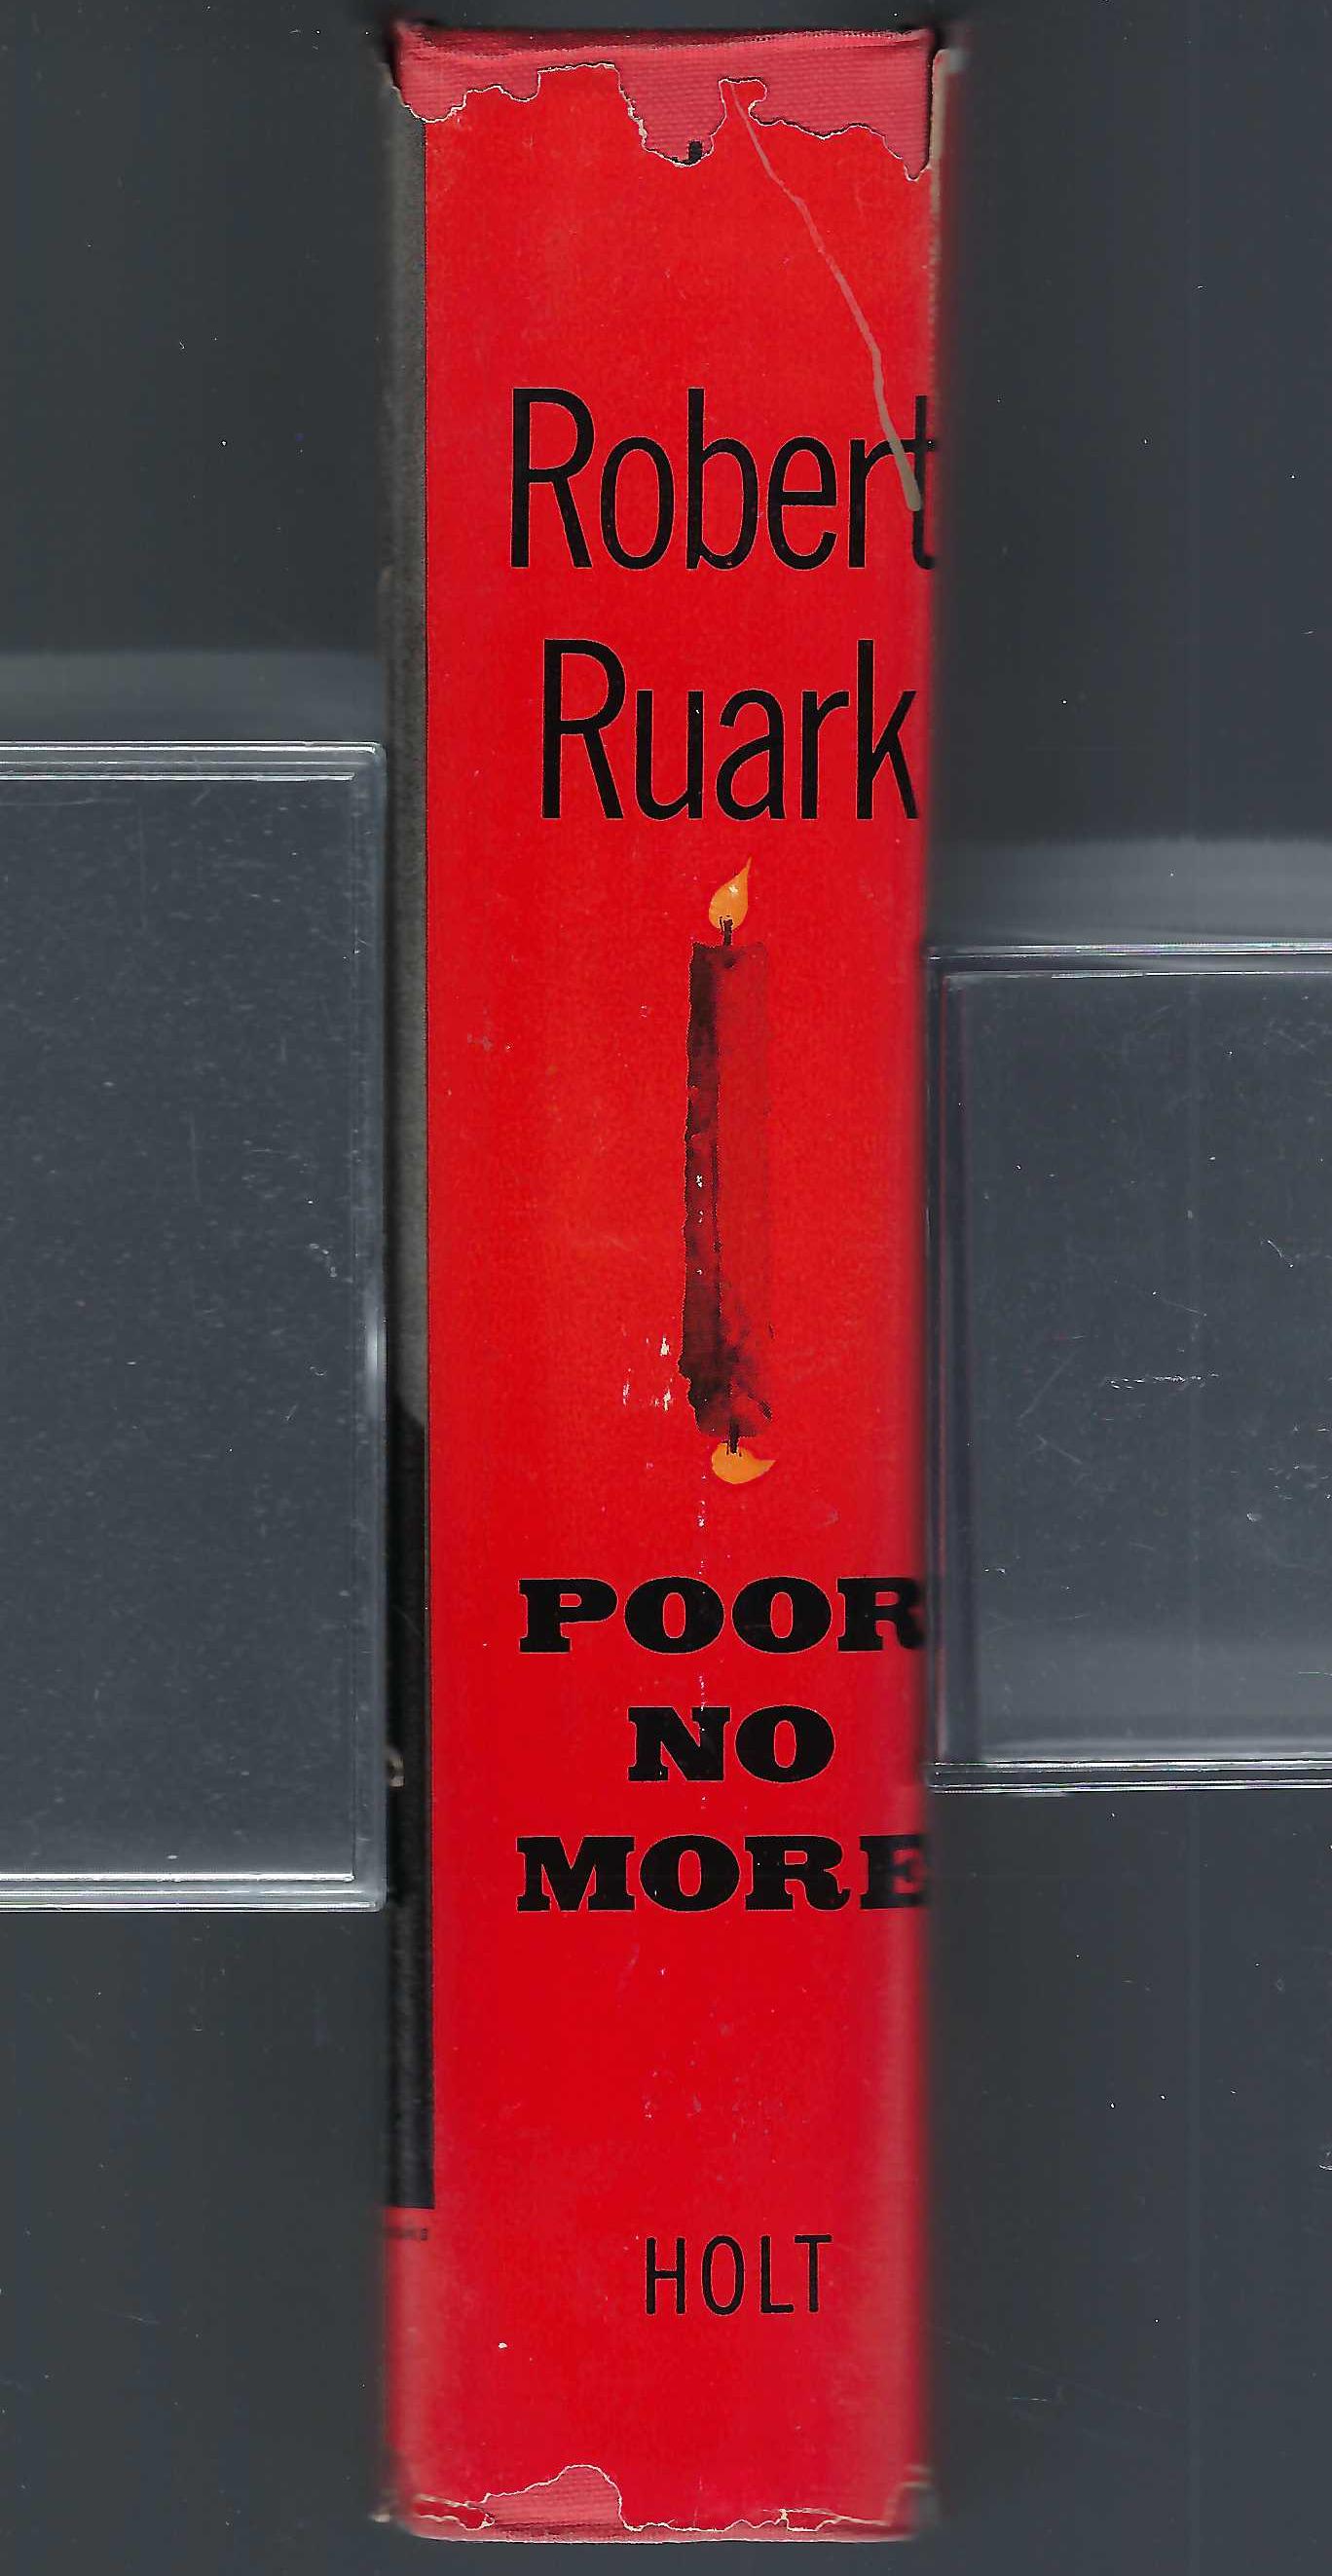 Poor No More by Robert Ruark spine